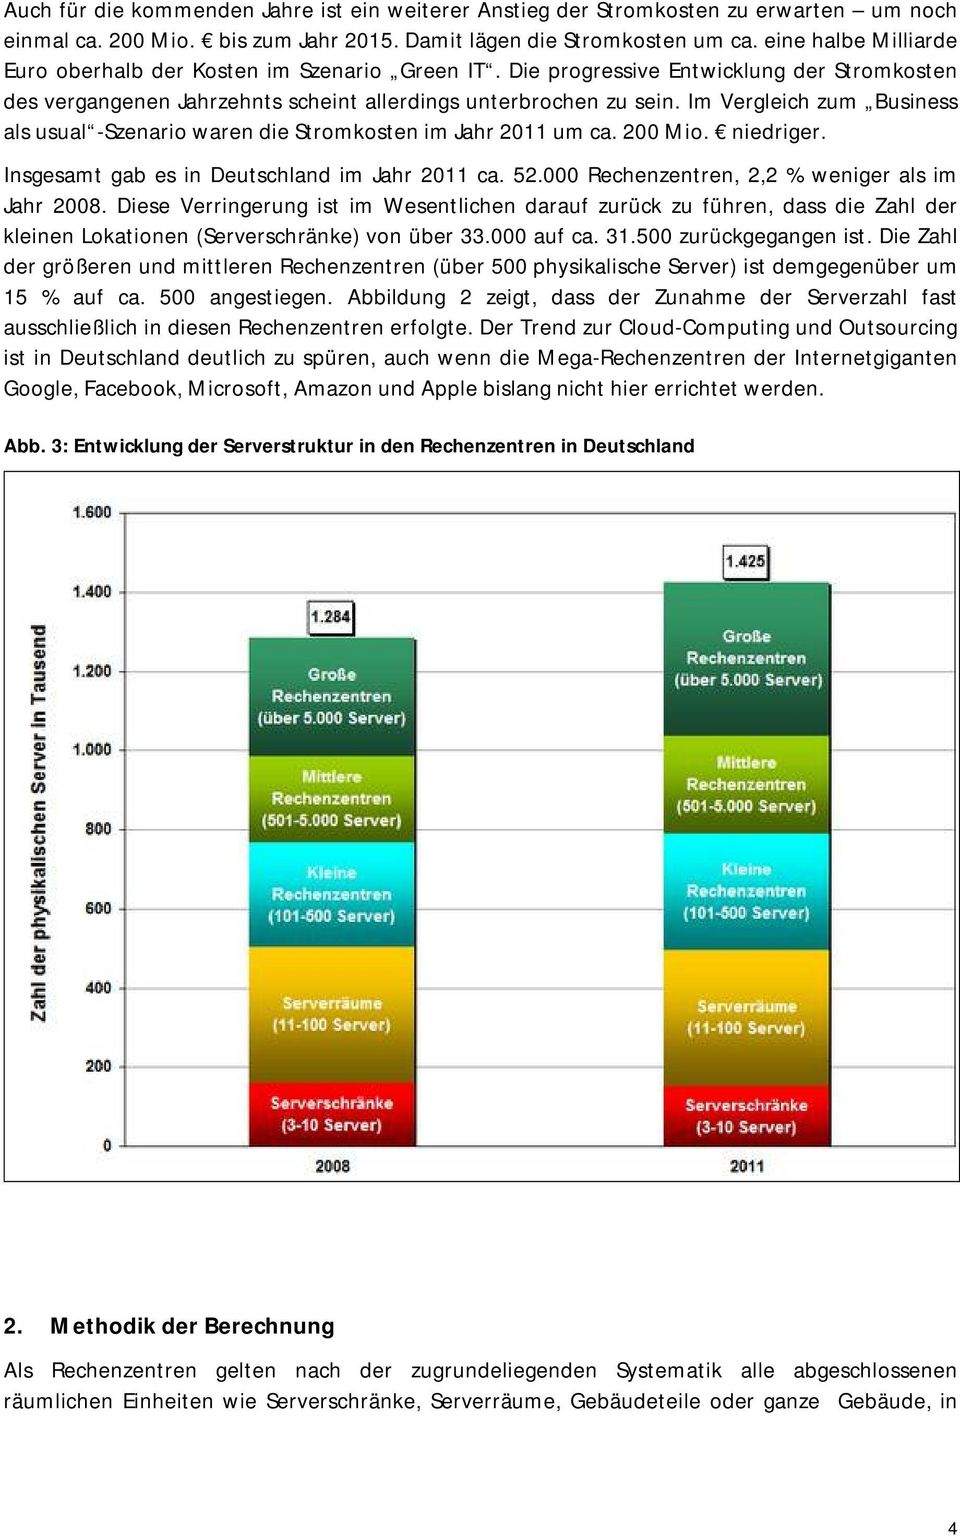 Im Vergleich zum Business als usual -Szenario waren die Stromkosten im Jahr 2011 um ca. 200 Mio. niedriger. Insgesamt gab es in Deutschland im Jahr 2011 ca. 52.